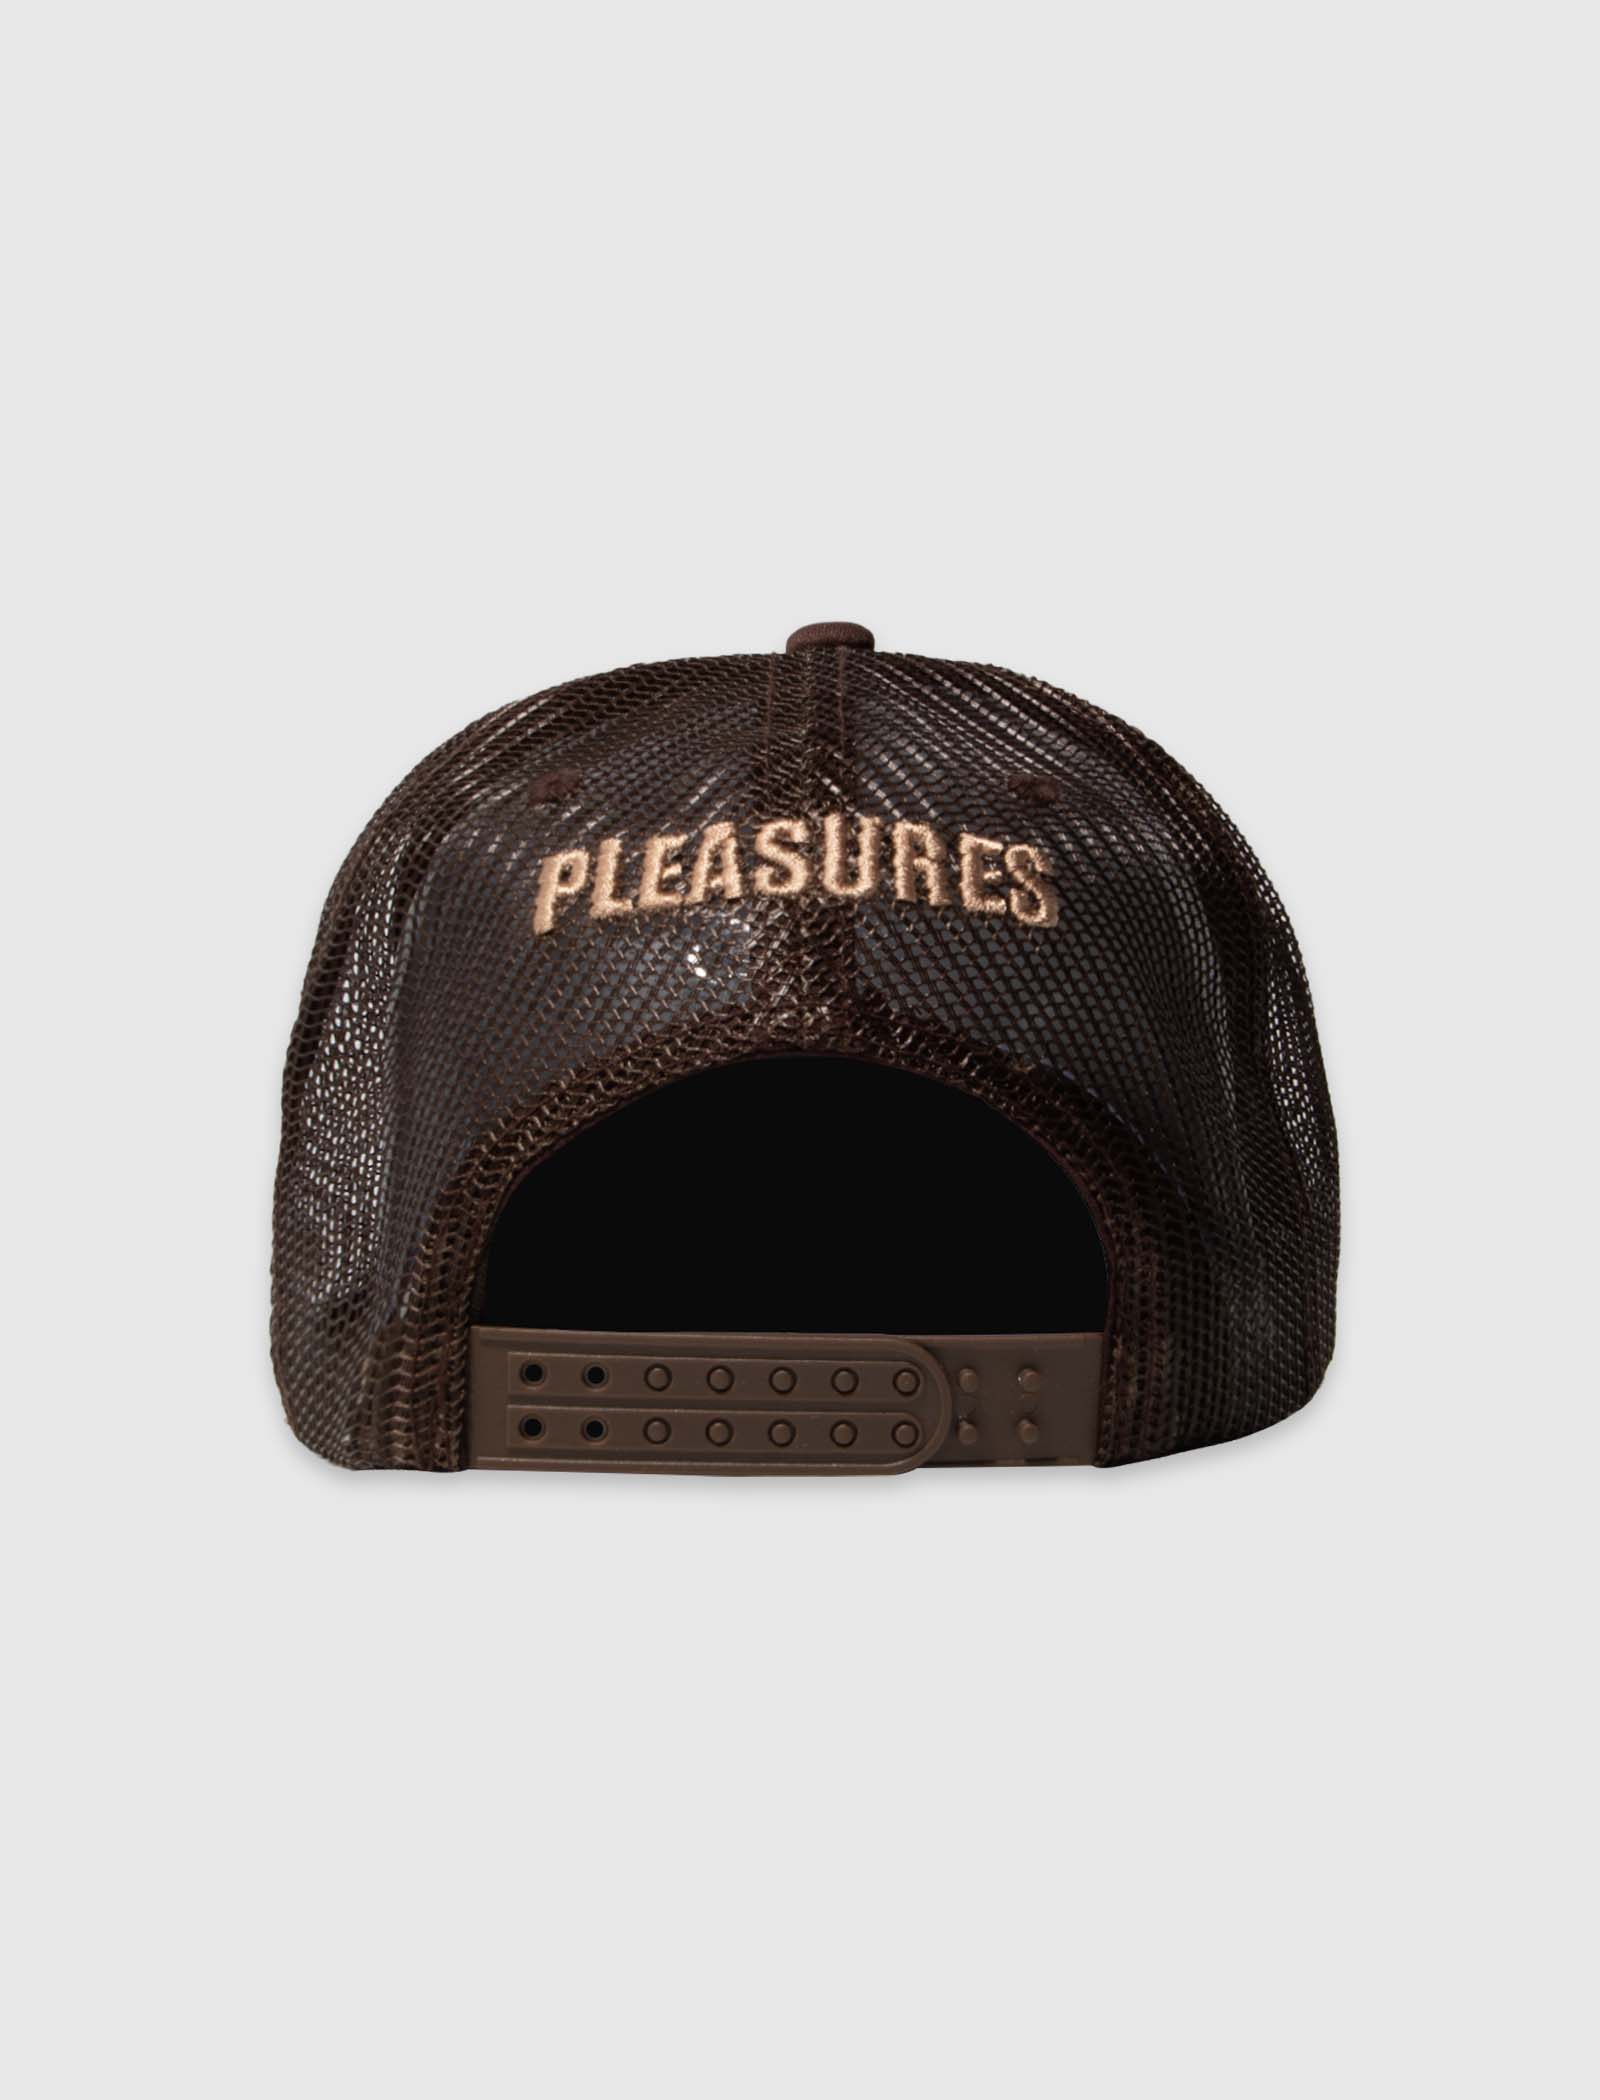 PLEASURES BUNNY TRUCKER HAT